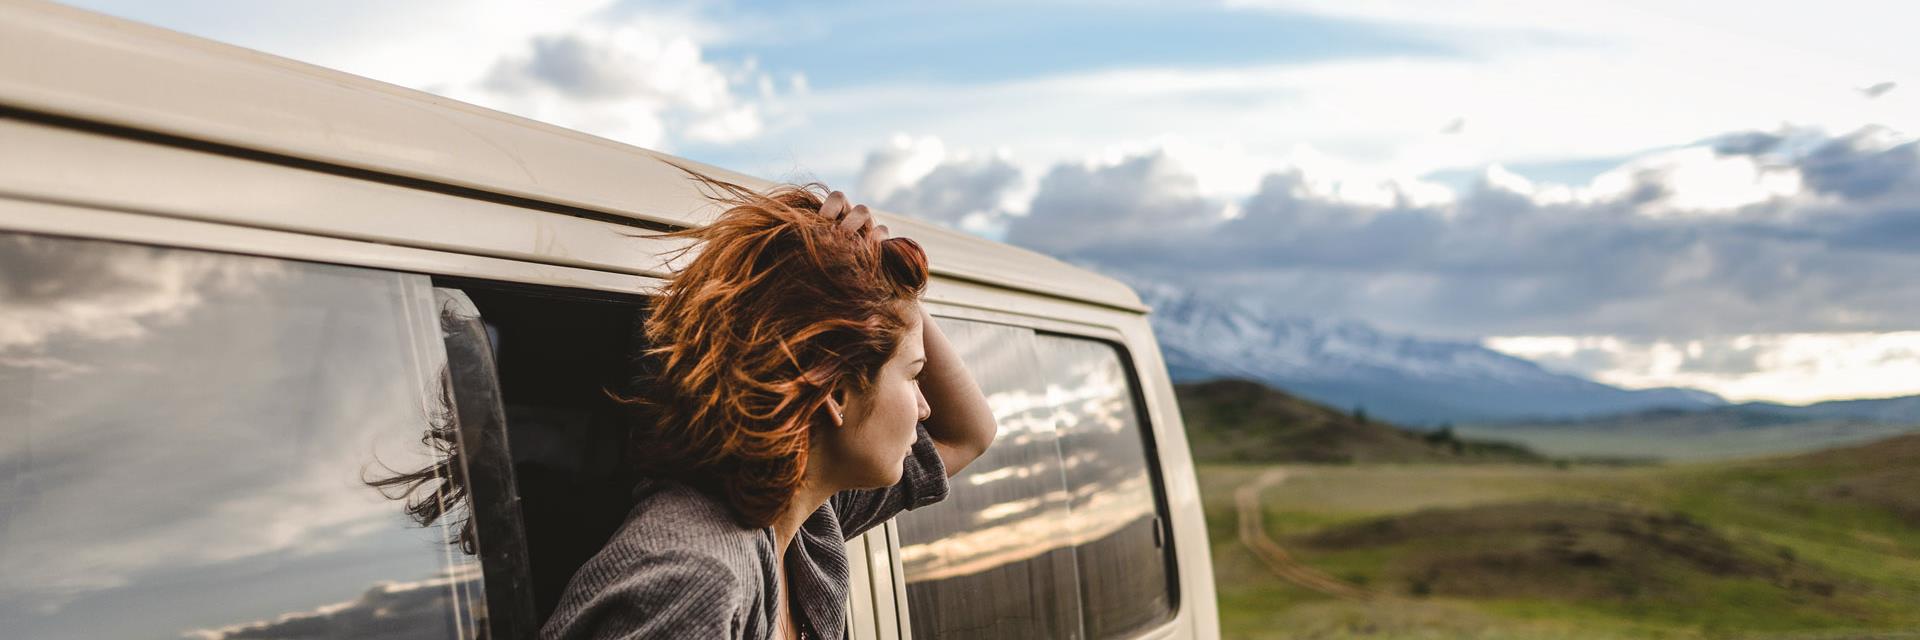 Woman peering out of campervan window.